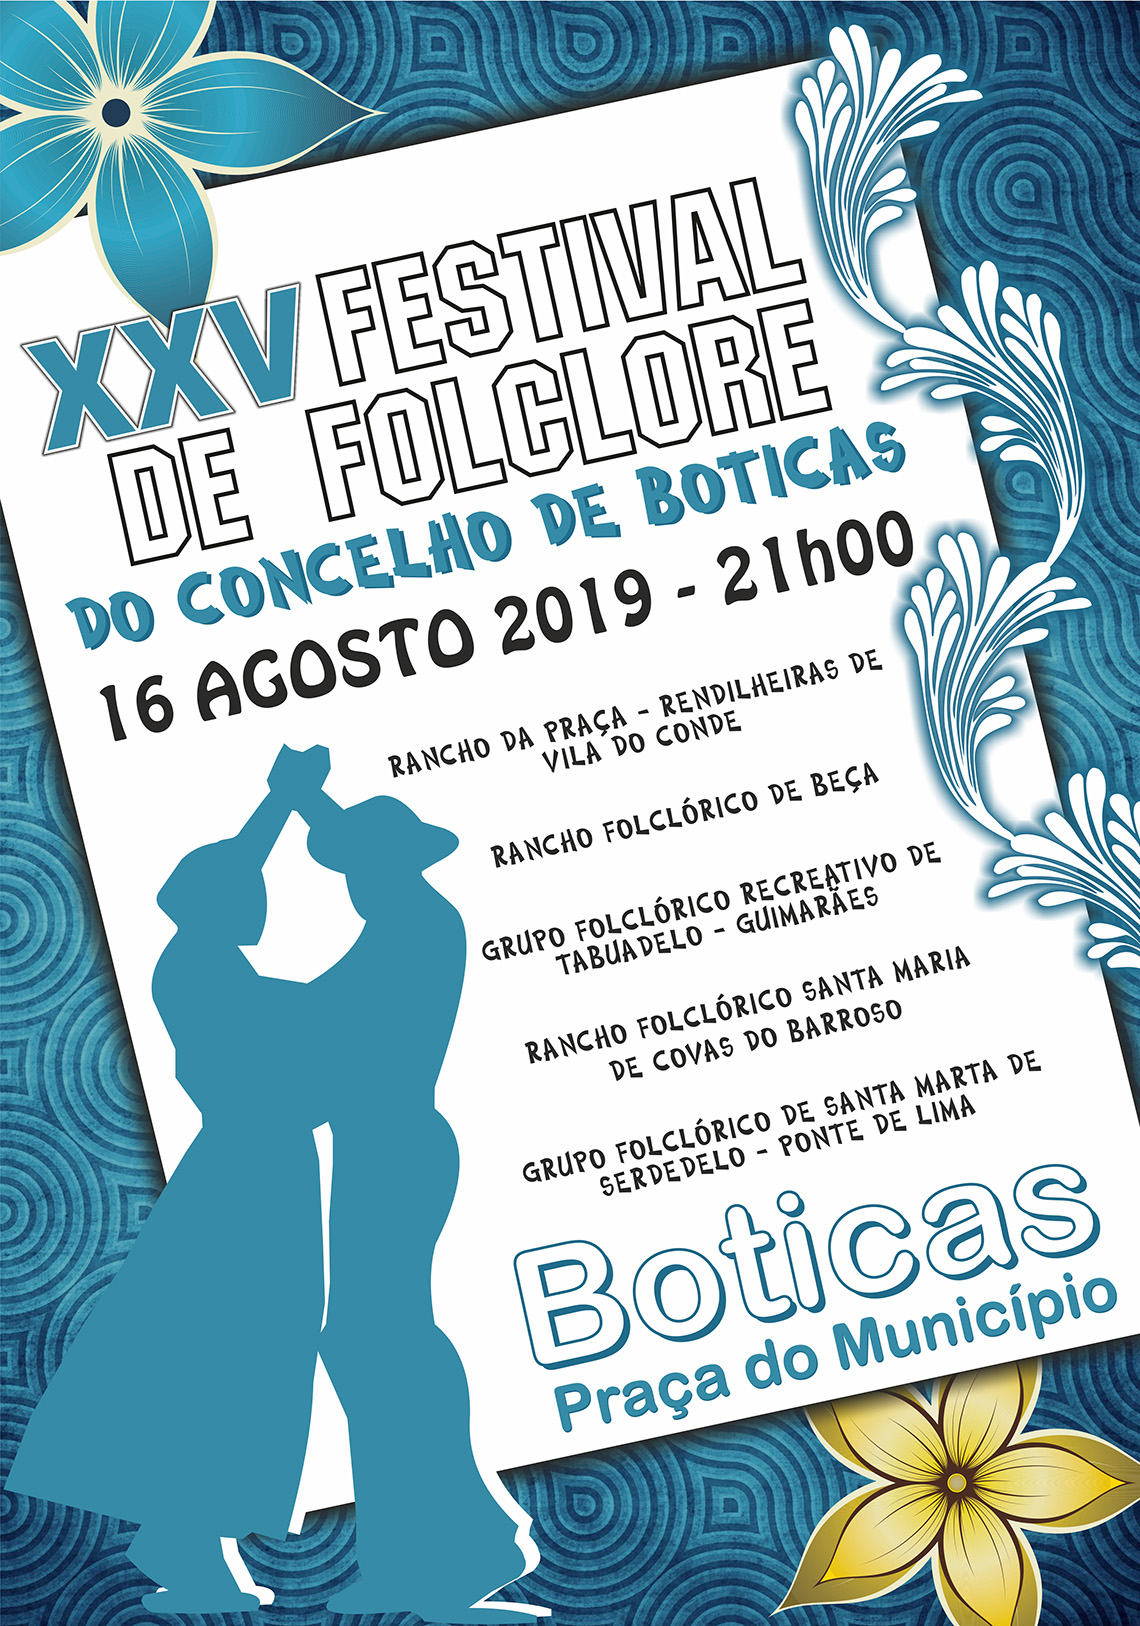 XXV Festival de Folclore do Concelho de Boticas